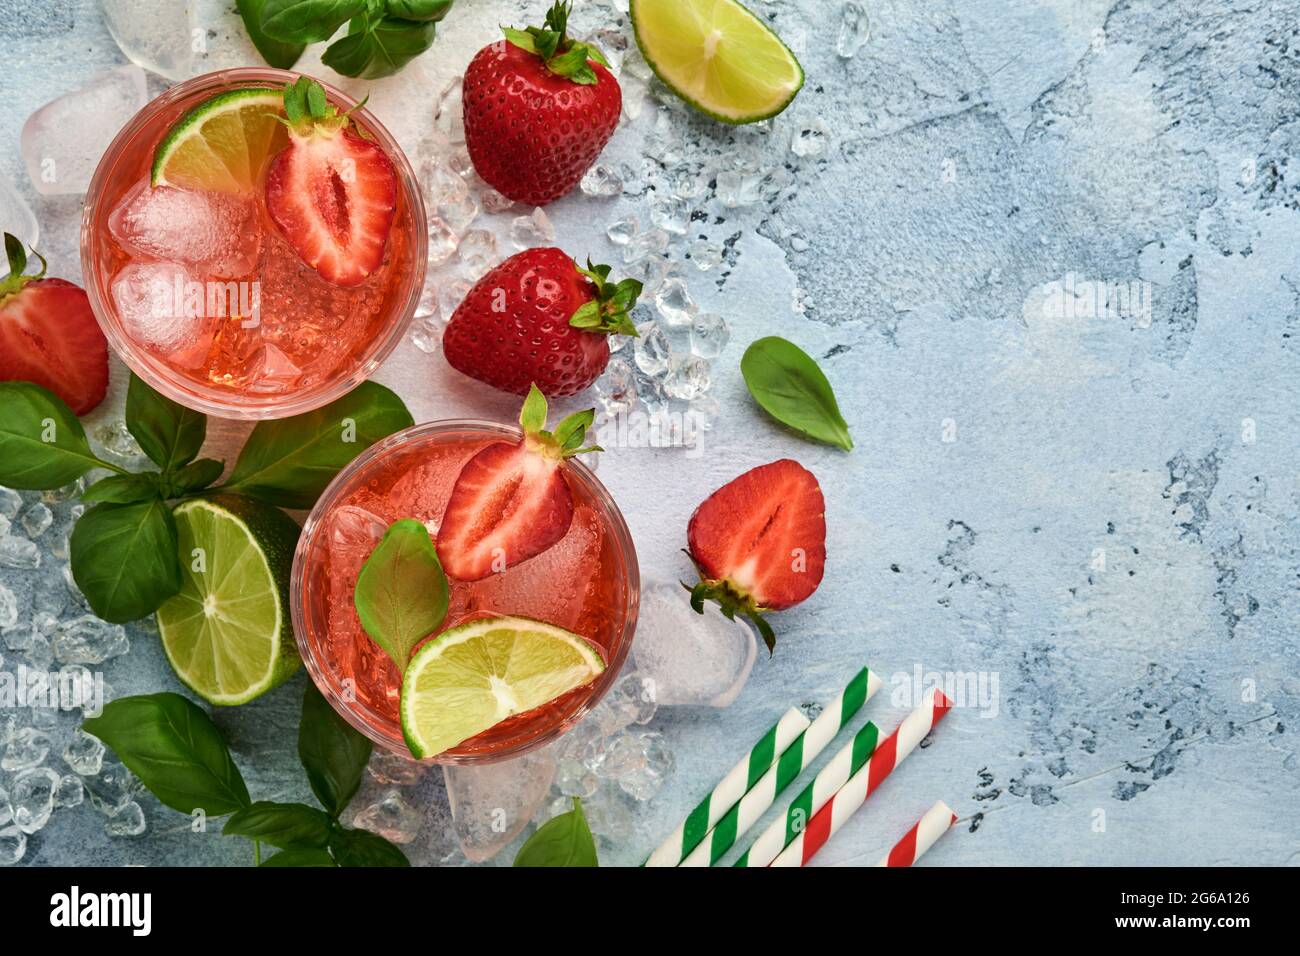 Zwei Gläser Punsch und frische Zutaten für die Herstellung von Limonade, infusem Detox-Wasser oder Cocktail. Erdbeeren, Limette, Minze, Basilikum, Eiswürfel und Shaker Stockfoto